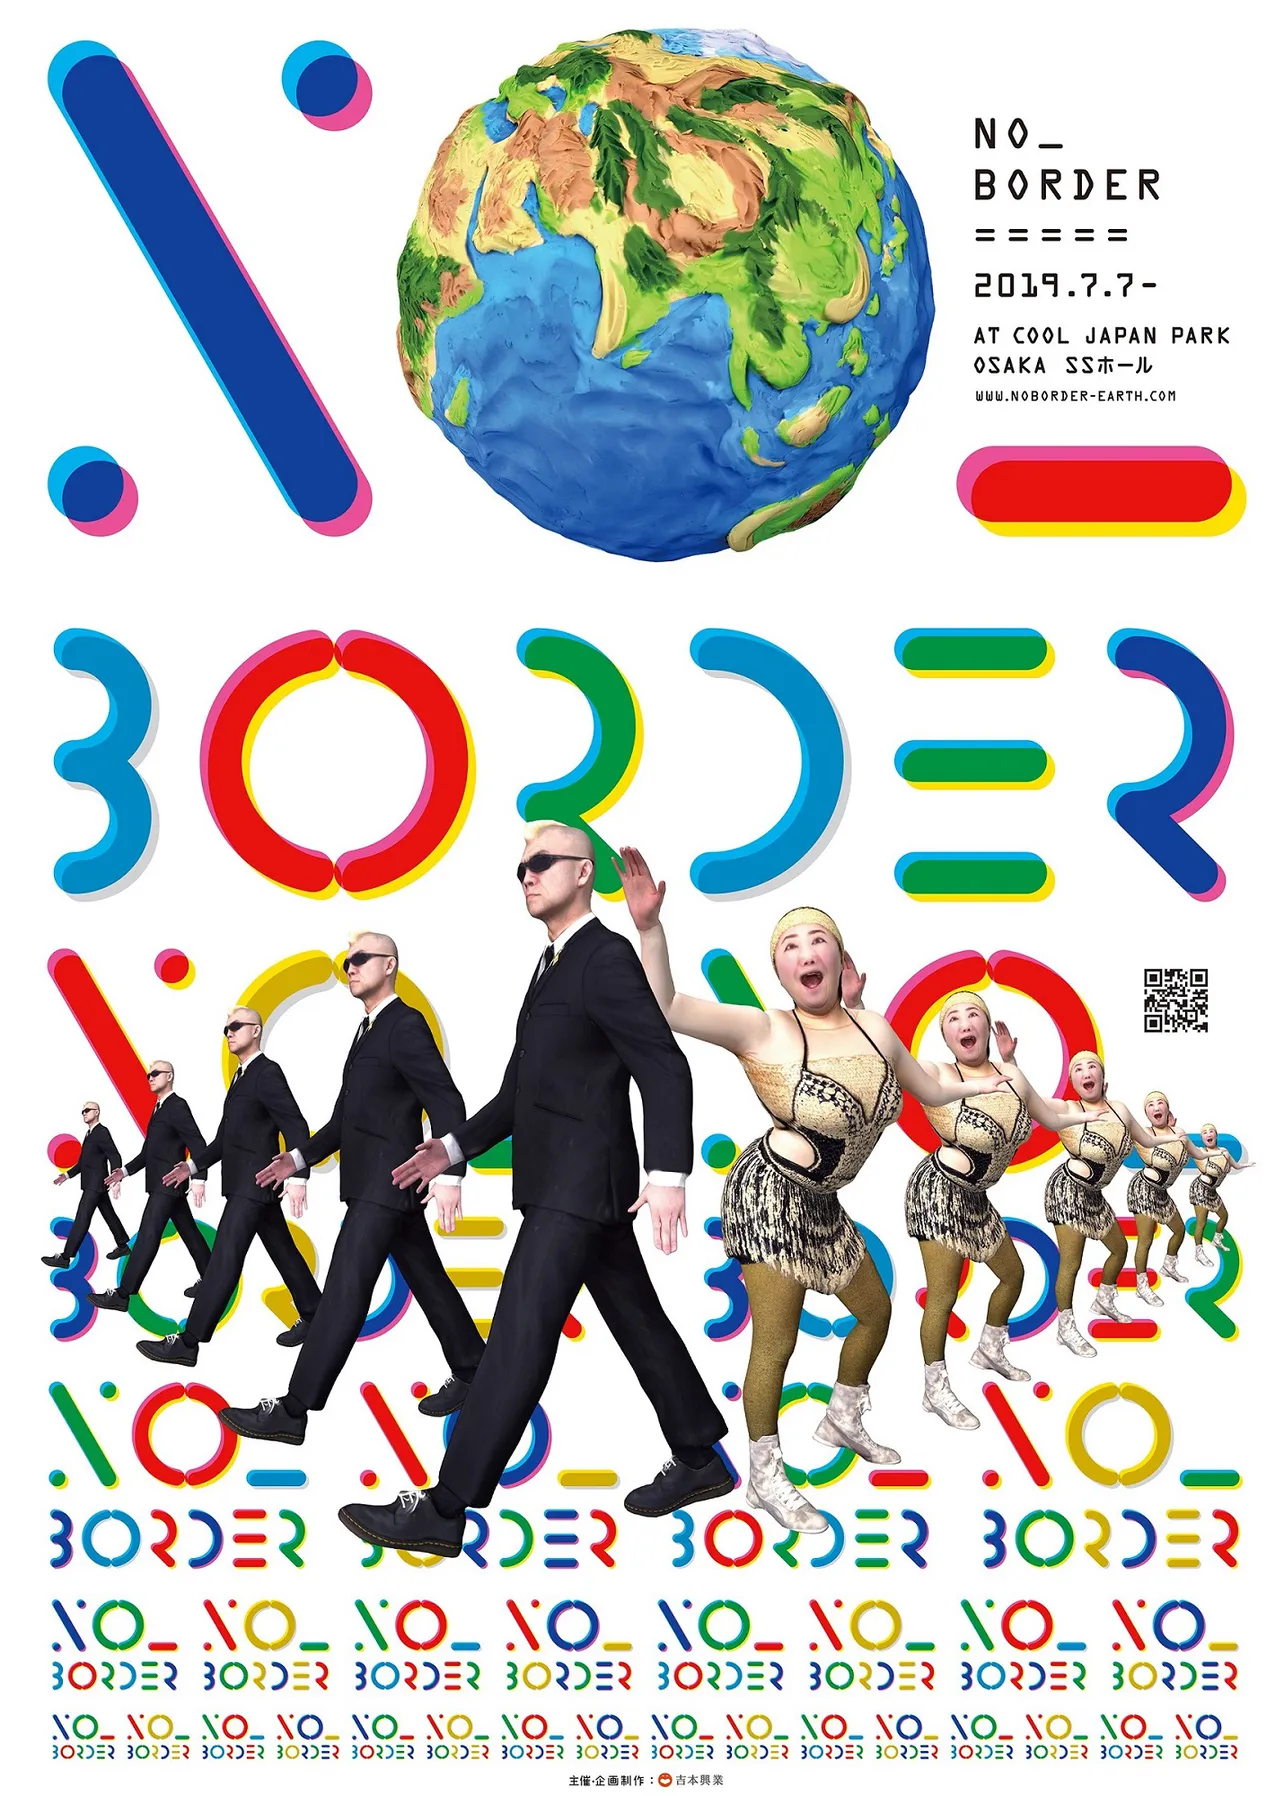 最新のVR技術を駆使した新感覚のライブエンターテインメント「NO_BORDER」は、2019年7月7日(日)～9月16日(月・祝)、大阪・COOL JAPAN PARK OSAKAにて開催